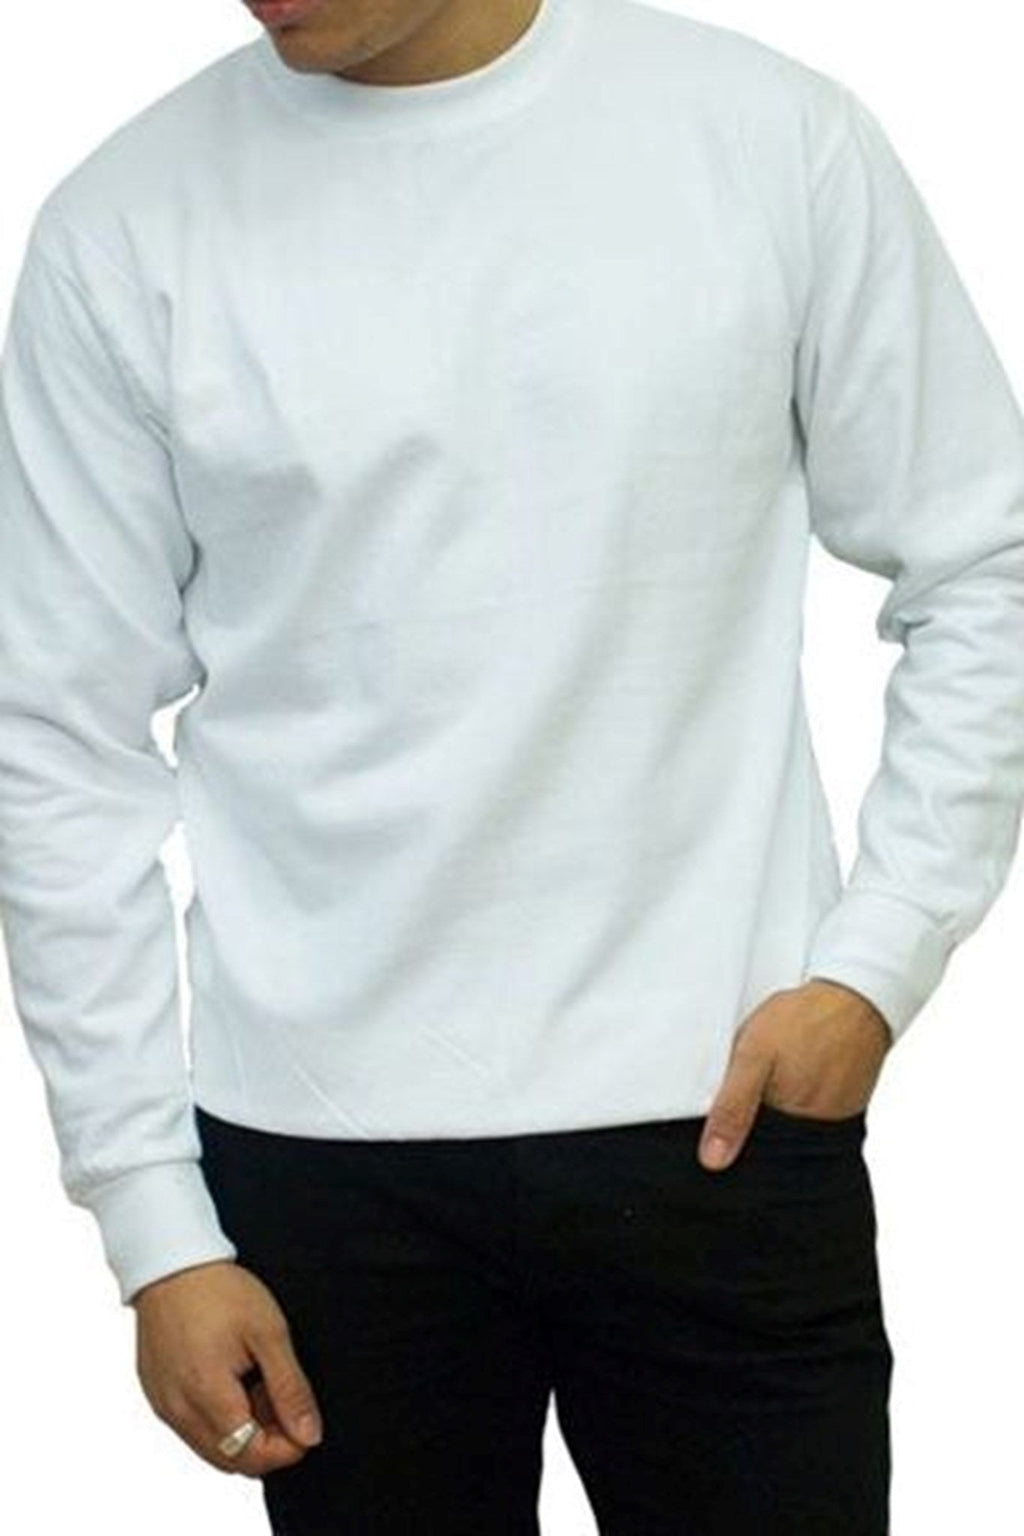 Suéter de cuello redacción - blanco